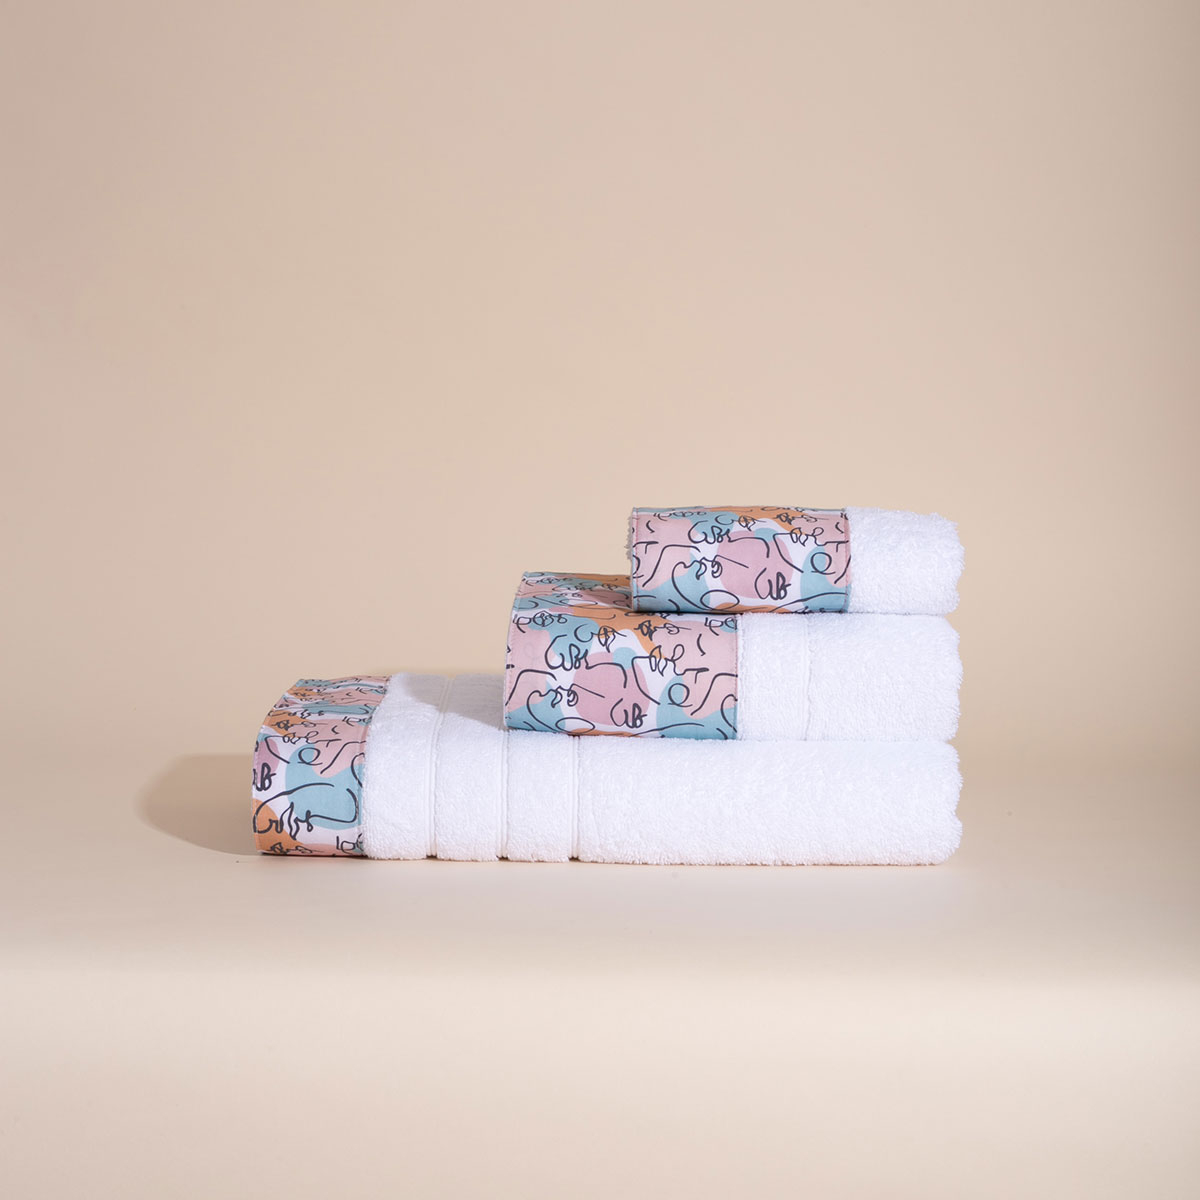 Πετσέτες Μπάνιου (Σετ 3τμχ) White Fabric Art Multi Color White 550gsm 213549